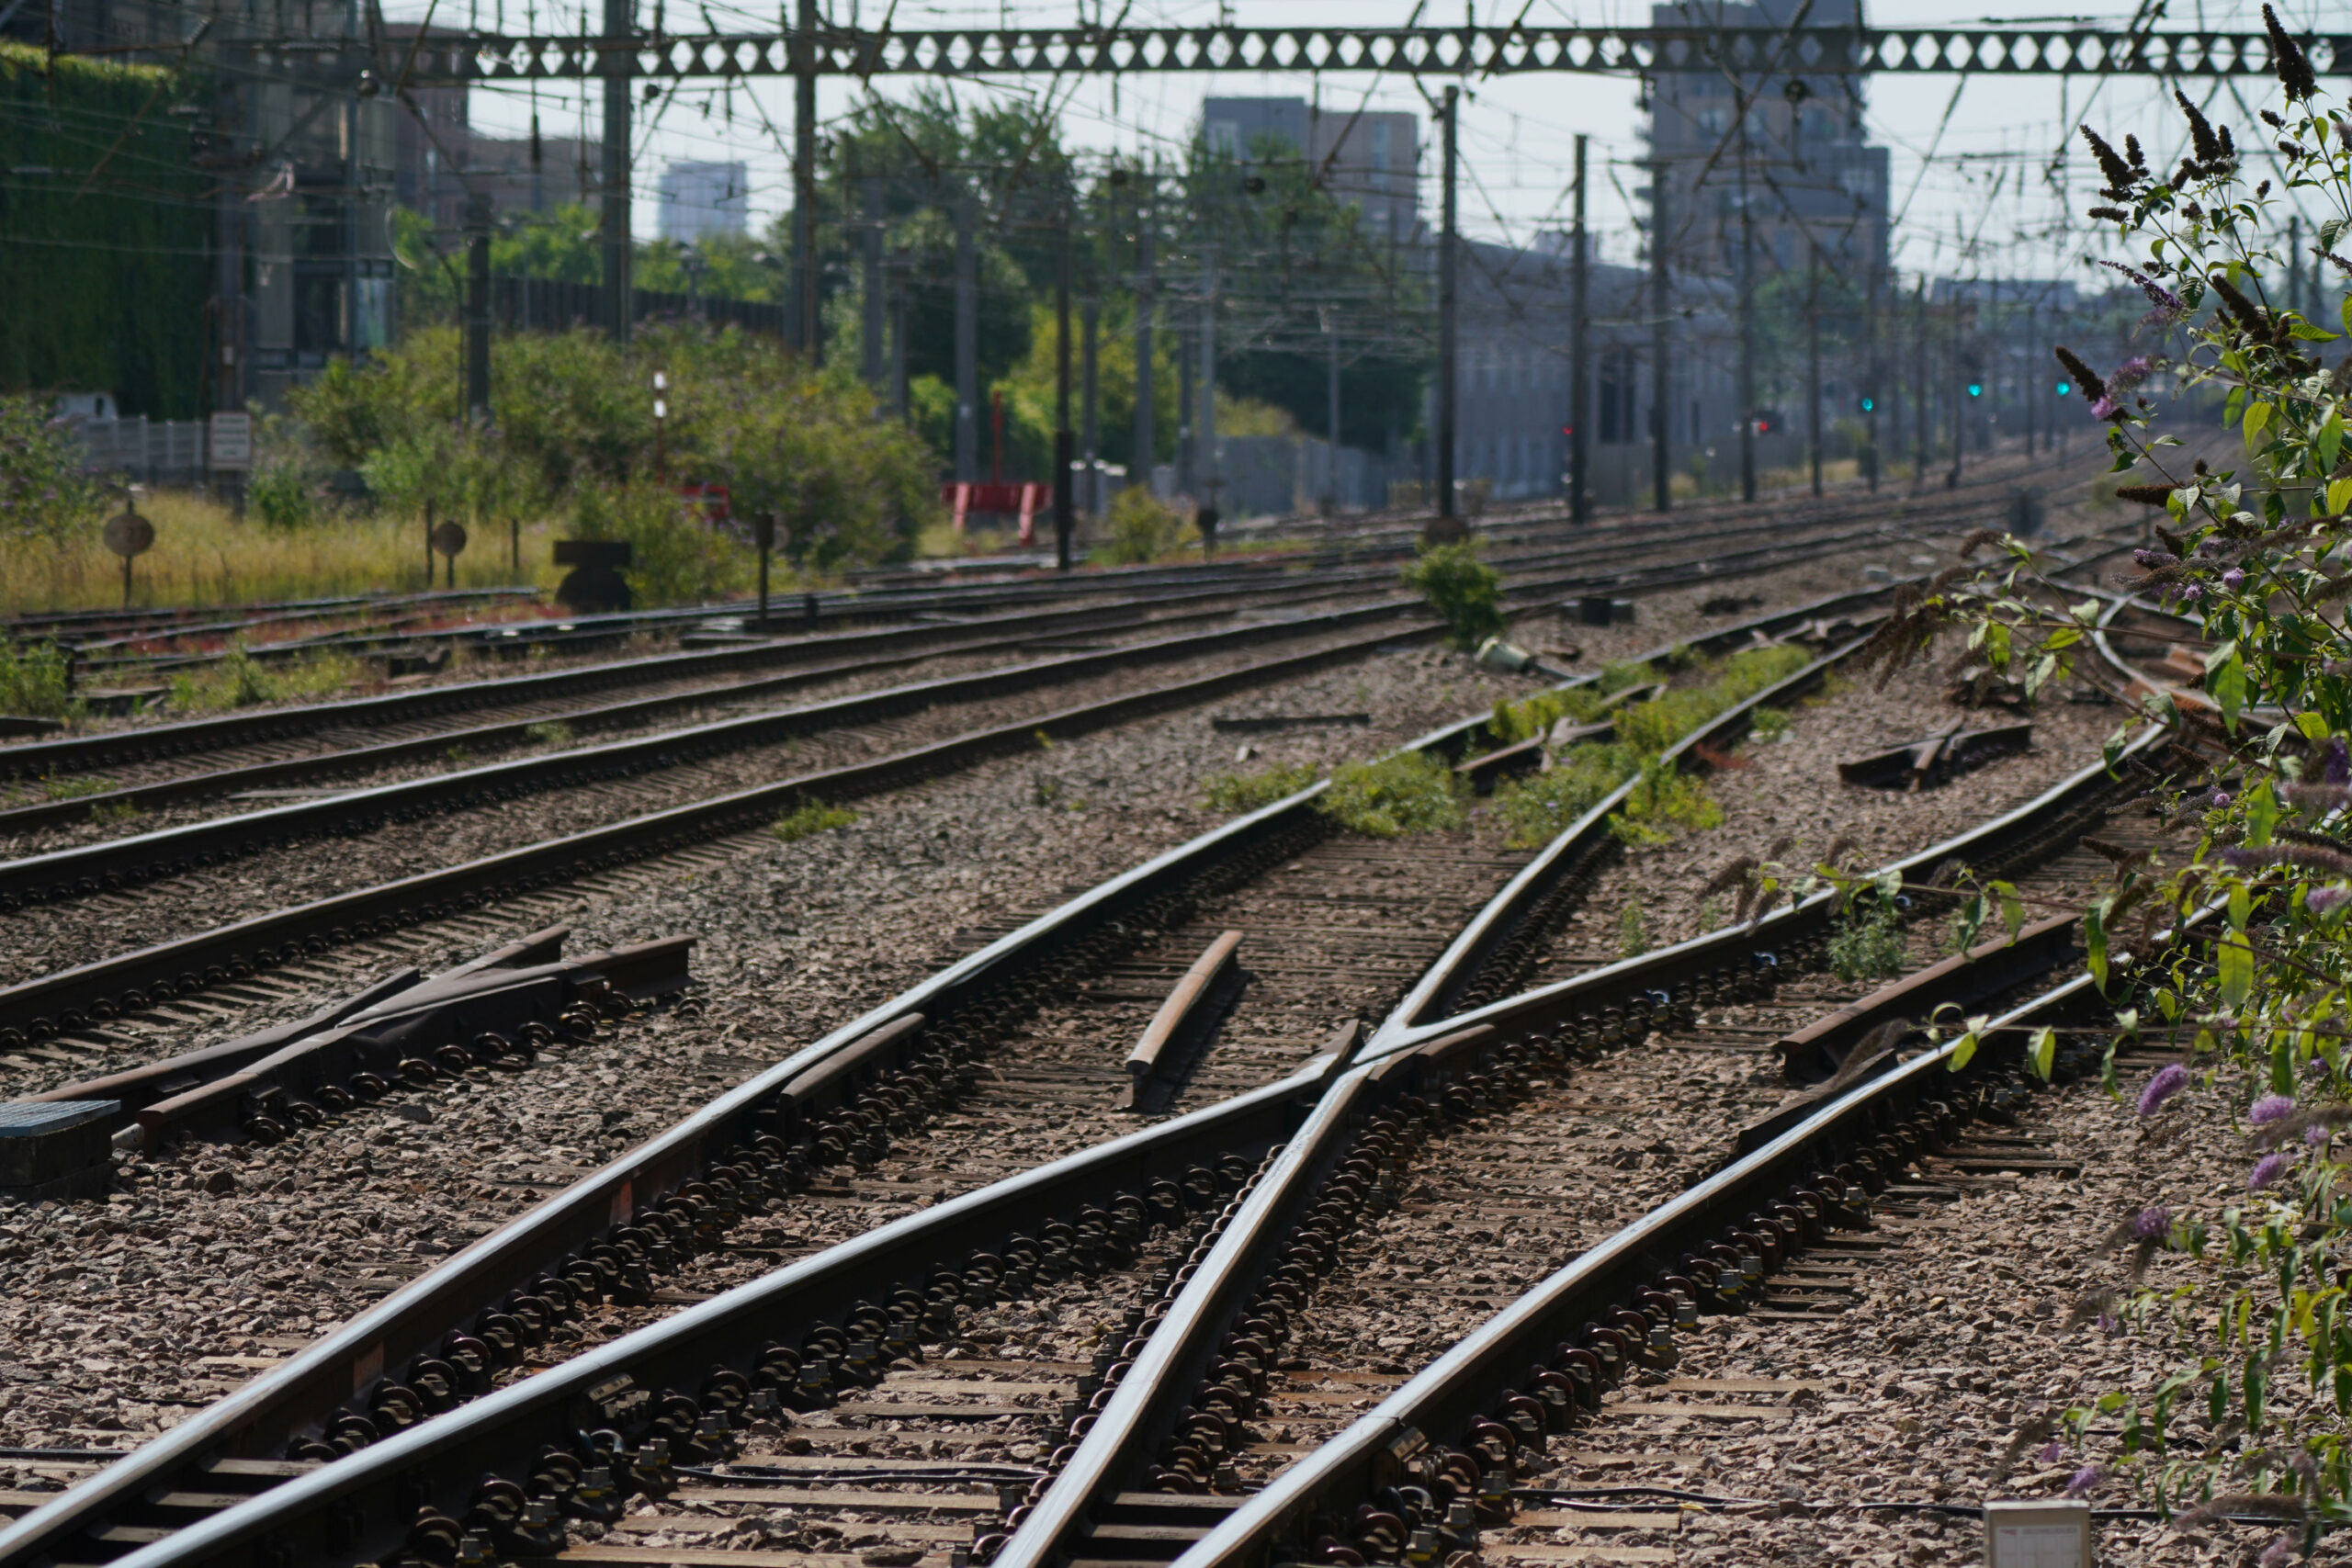 Britain's train tracks